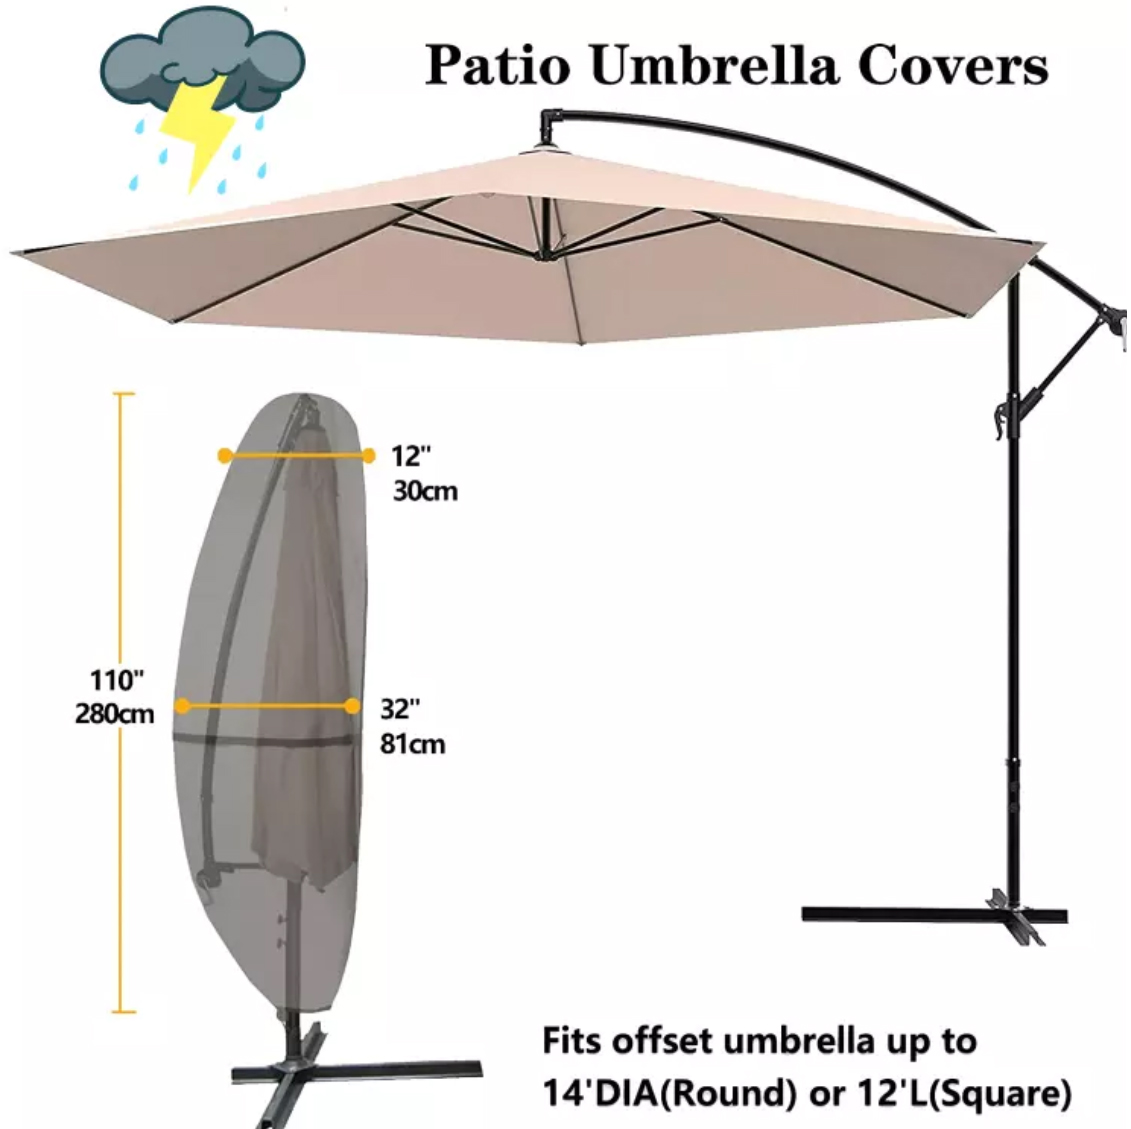 Patio Umbrella Covers